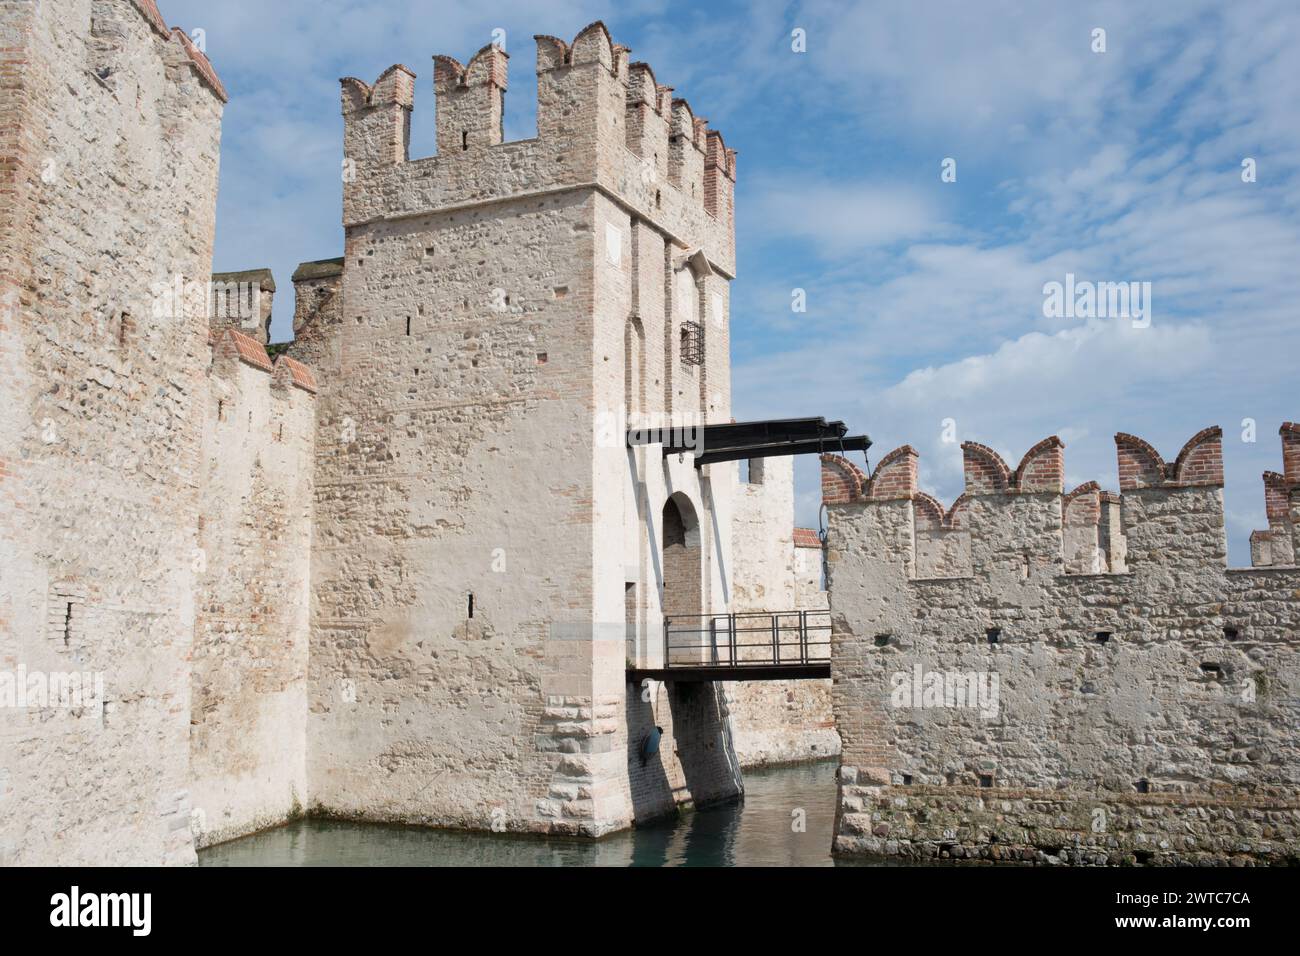 Splendido castello medievale a Sirmione, sul Lago di Garda, Italia Foto Stock